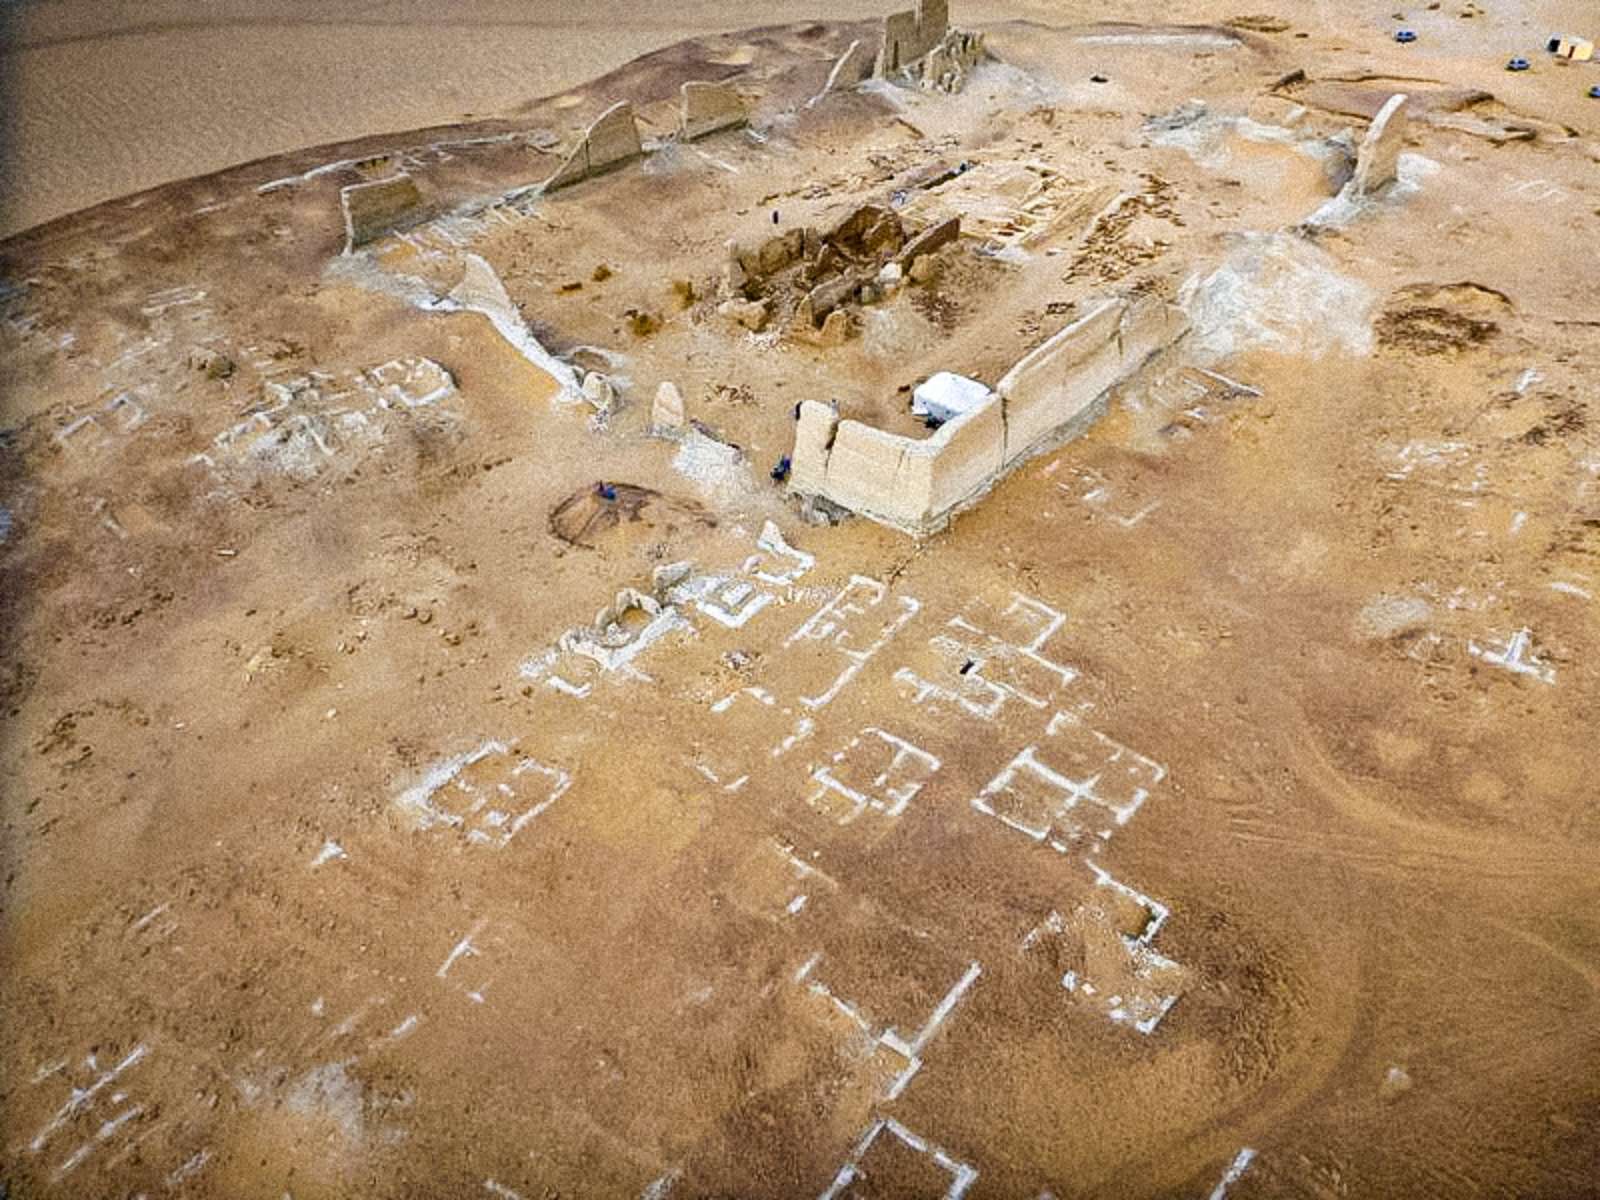 Soknopaiou Nesos: Kota kuno misterius di gurun Faiyum 1